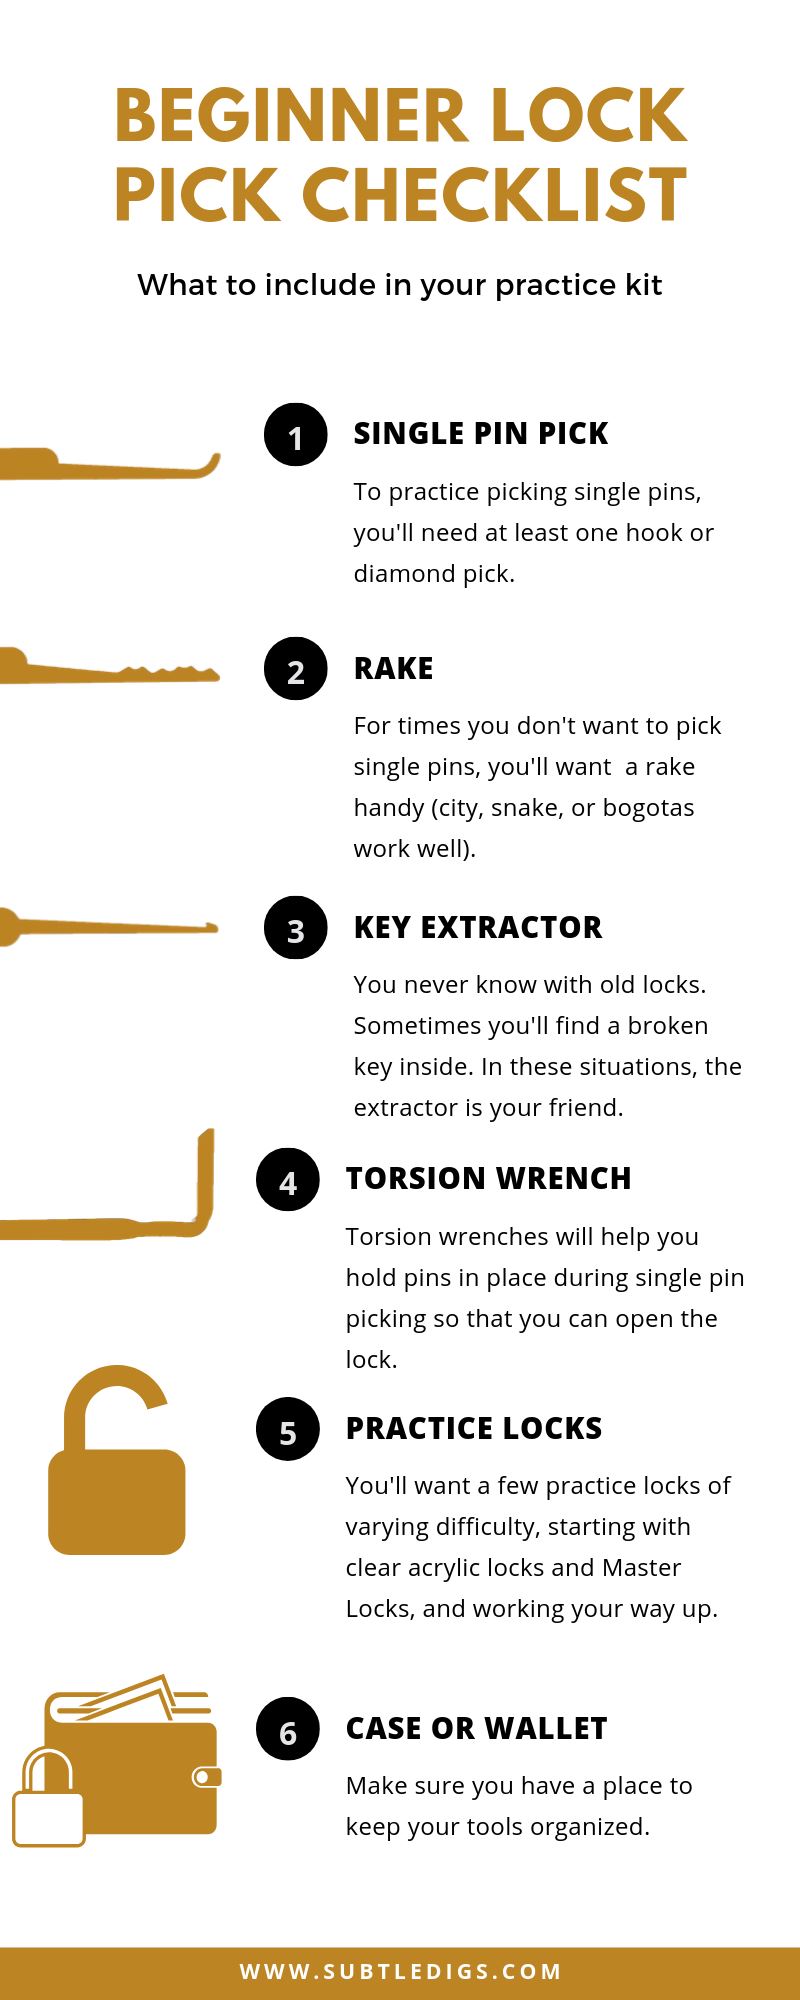 Beginner Lock Pick Tools Checklist